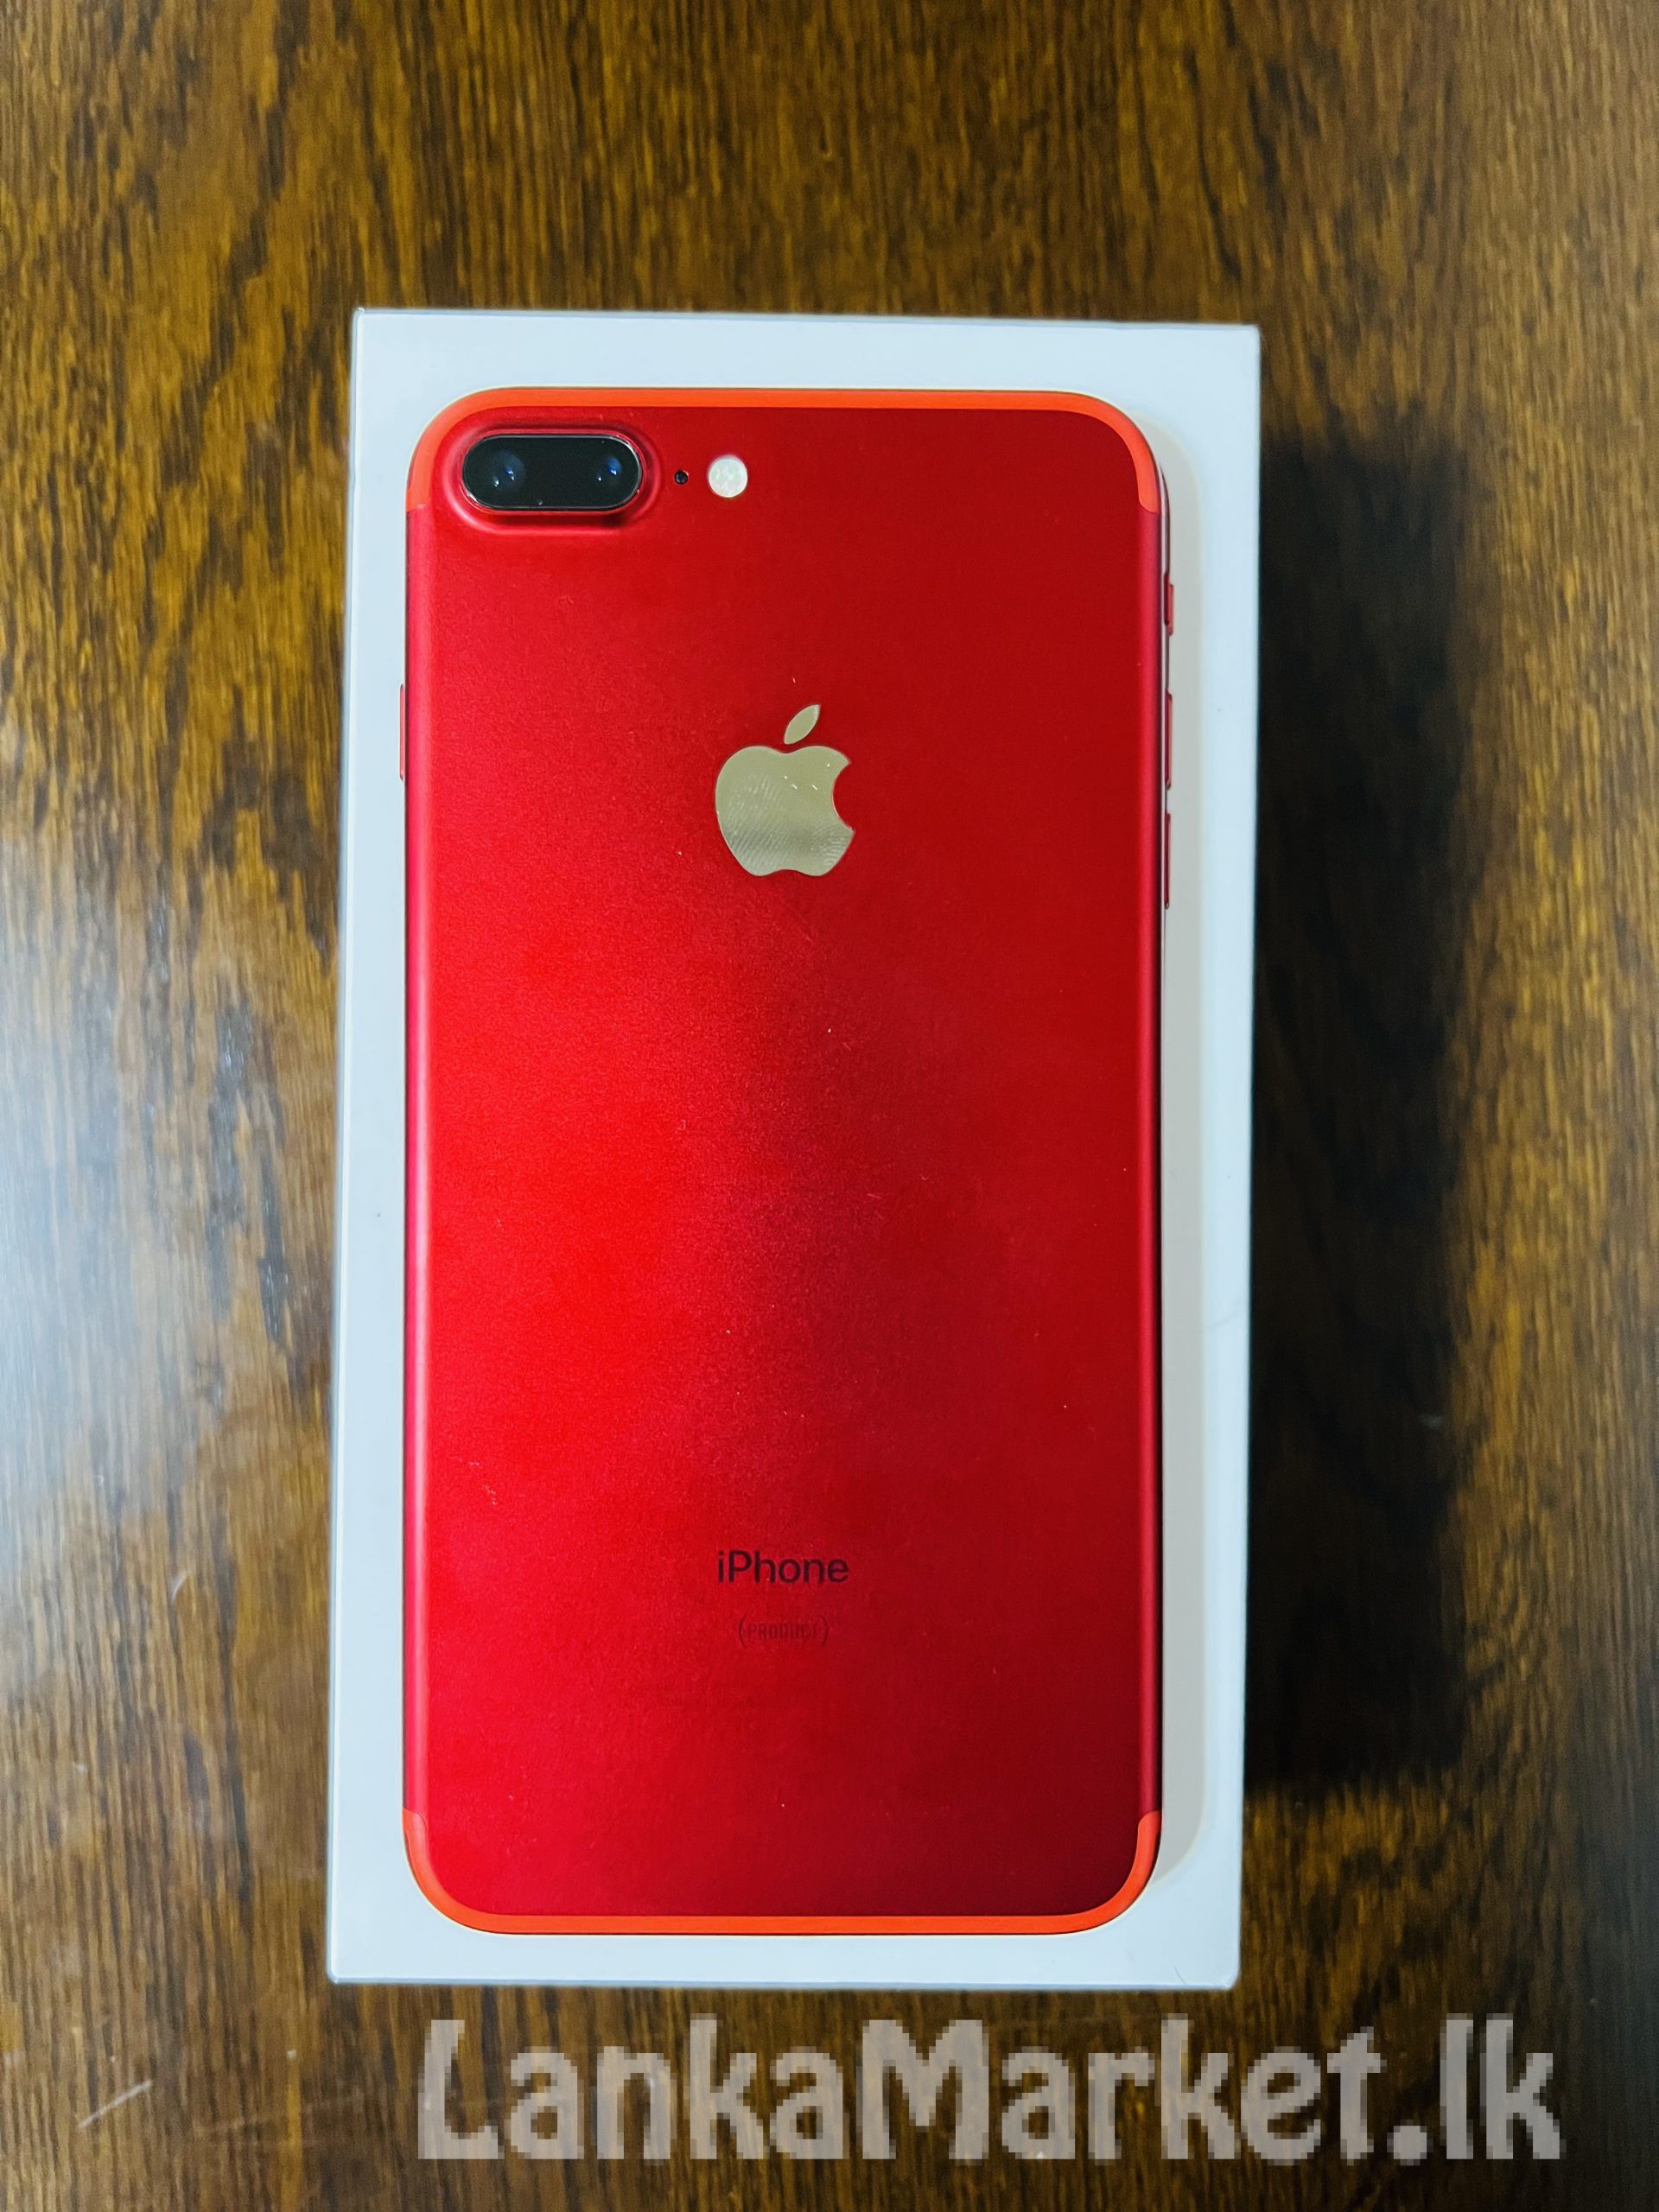 iPhone 7 Plus red